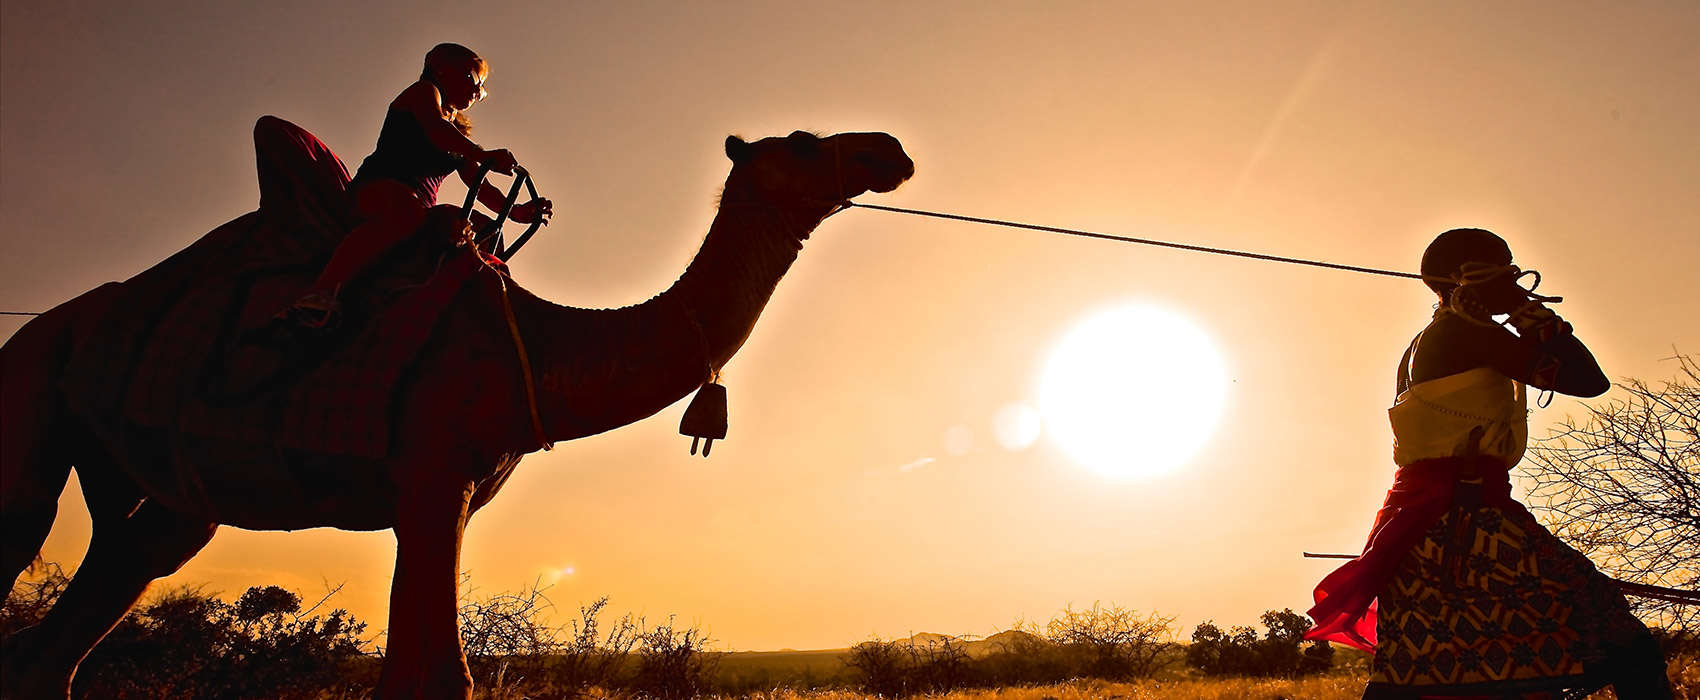 African Kenya Safari camel